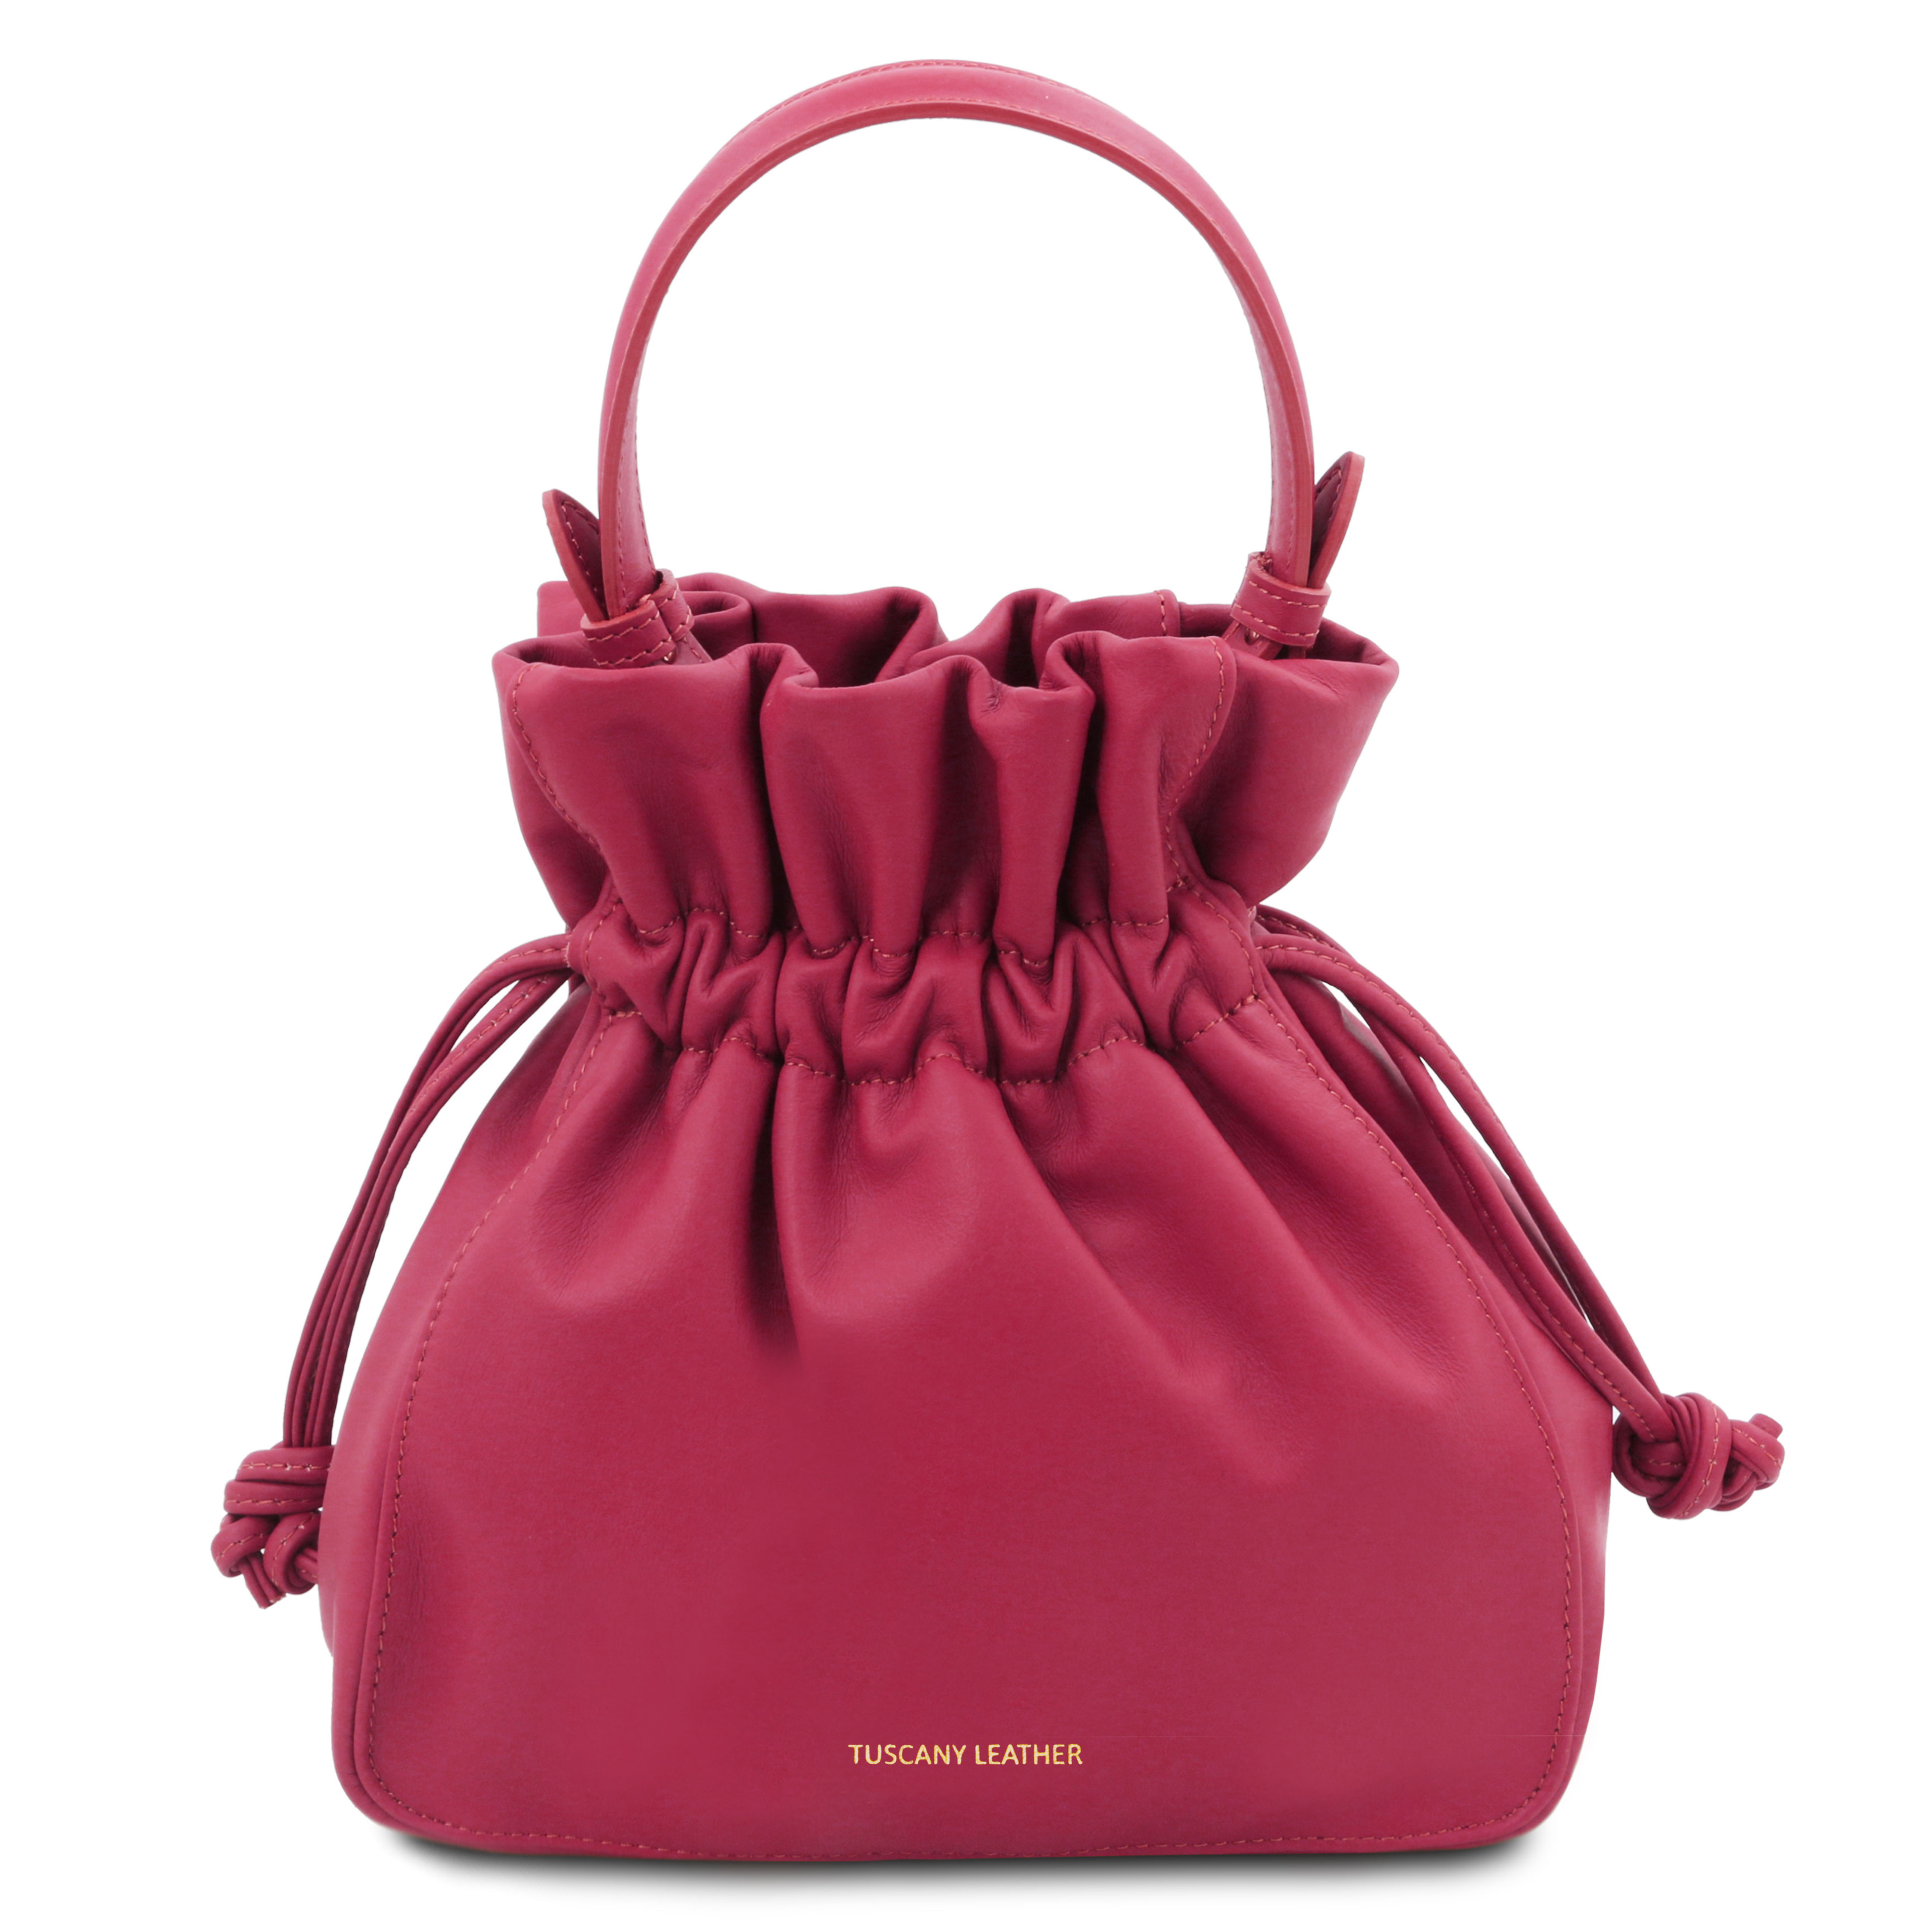 Tuscany Leather TL Bag - Soft leather bucket bag Colour Fuchsia